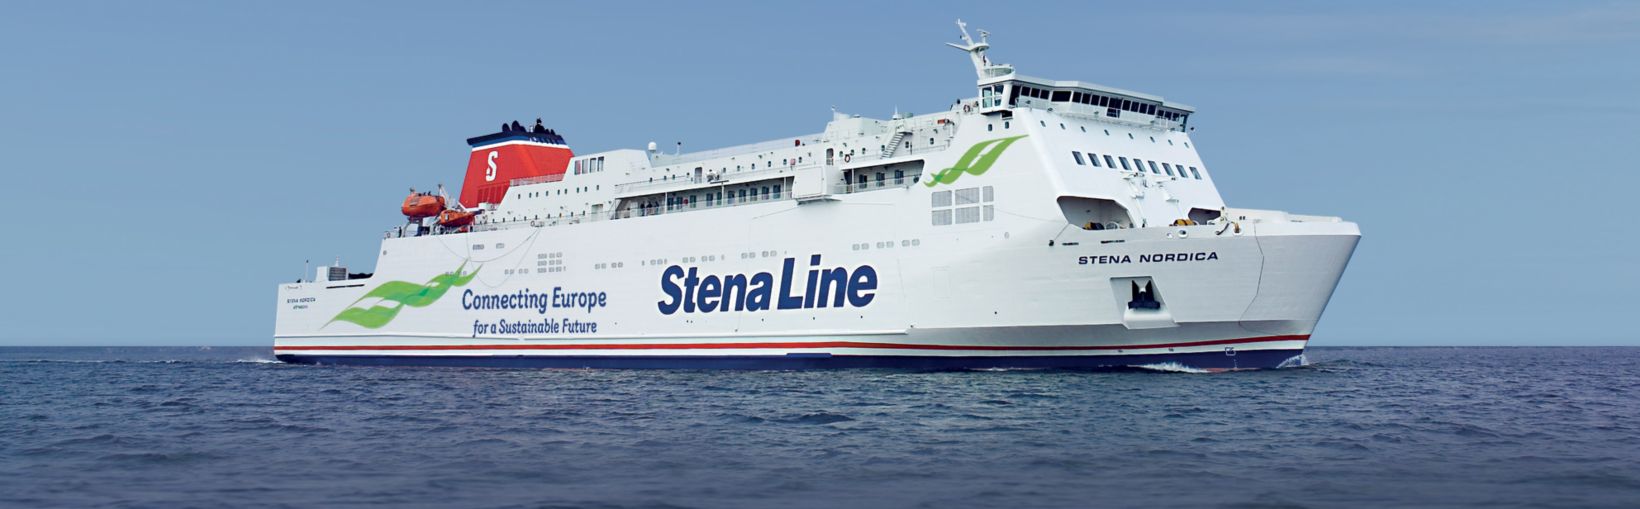 Færgen Stena Nordica til søs            